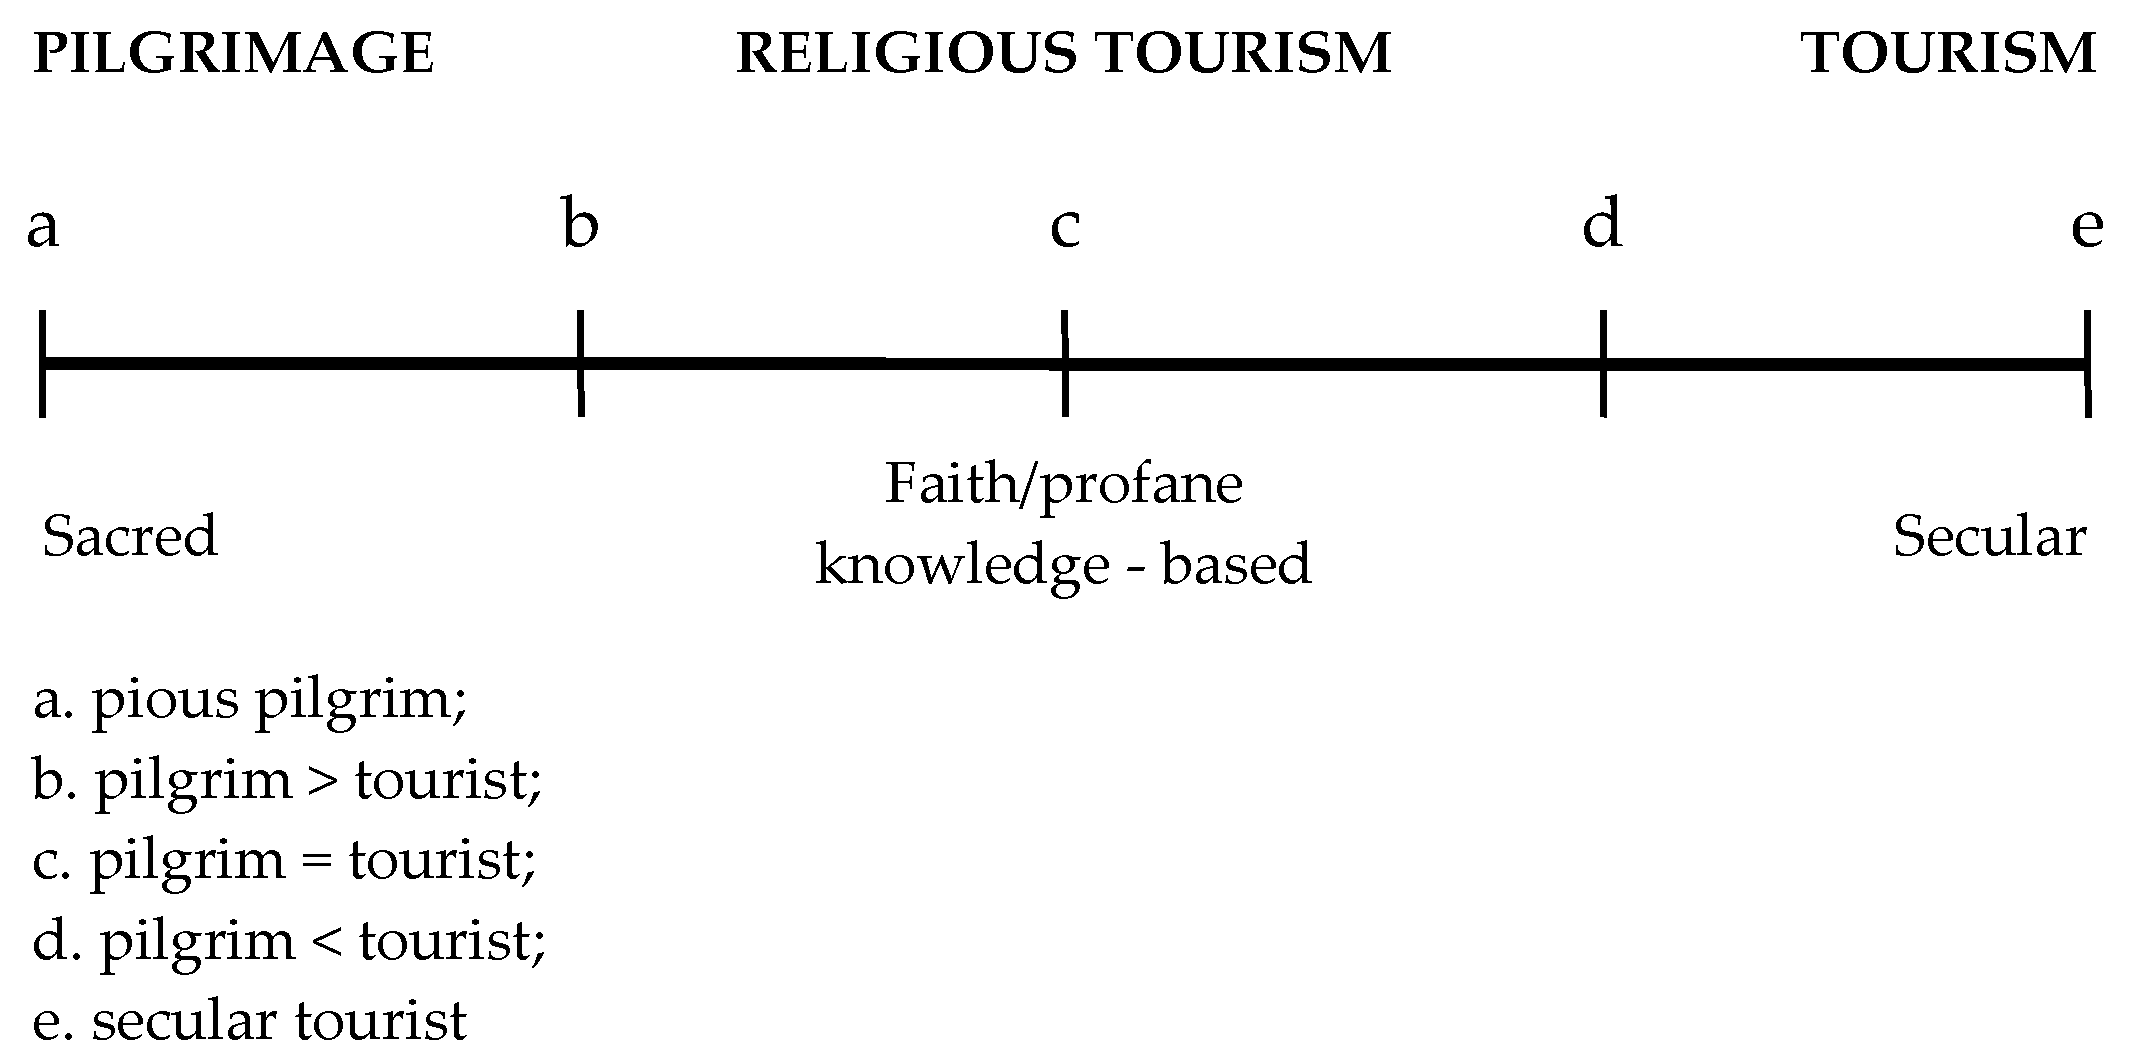 religious tourism bibliometric